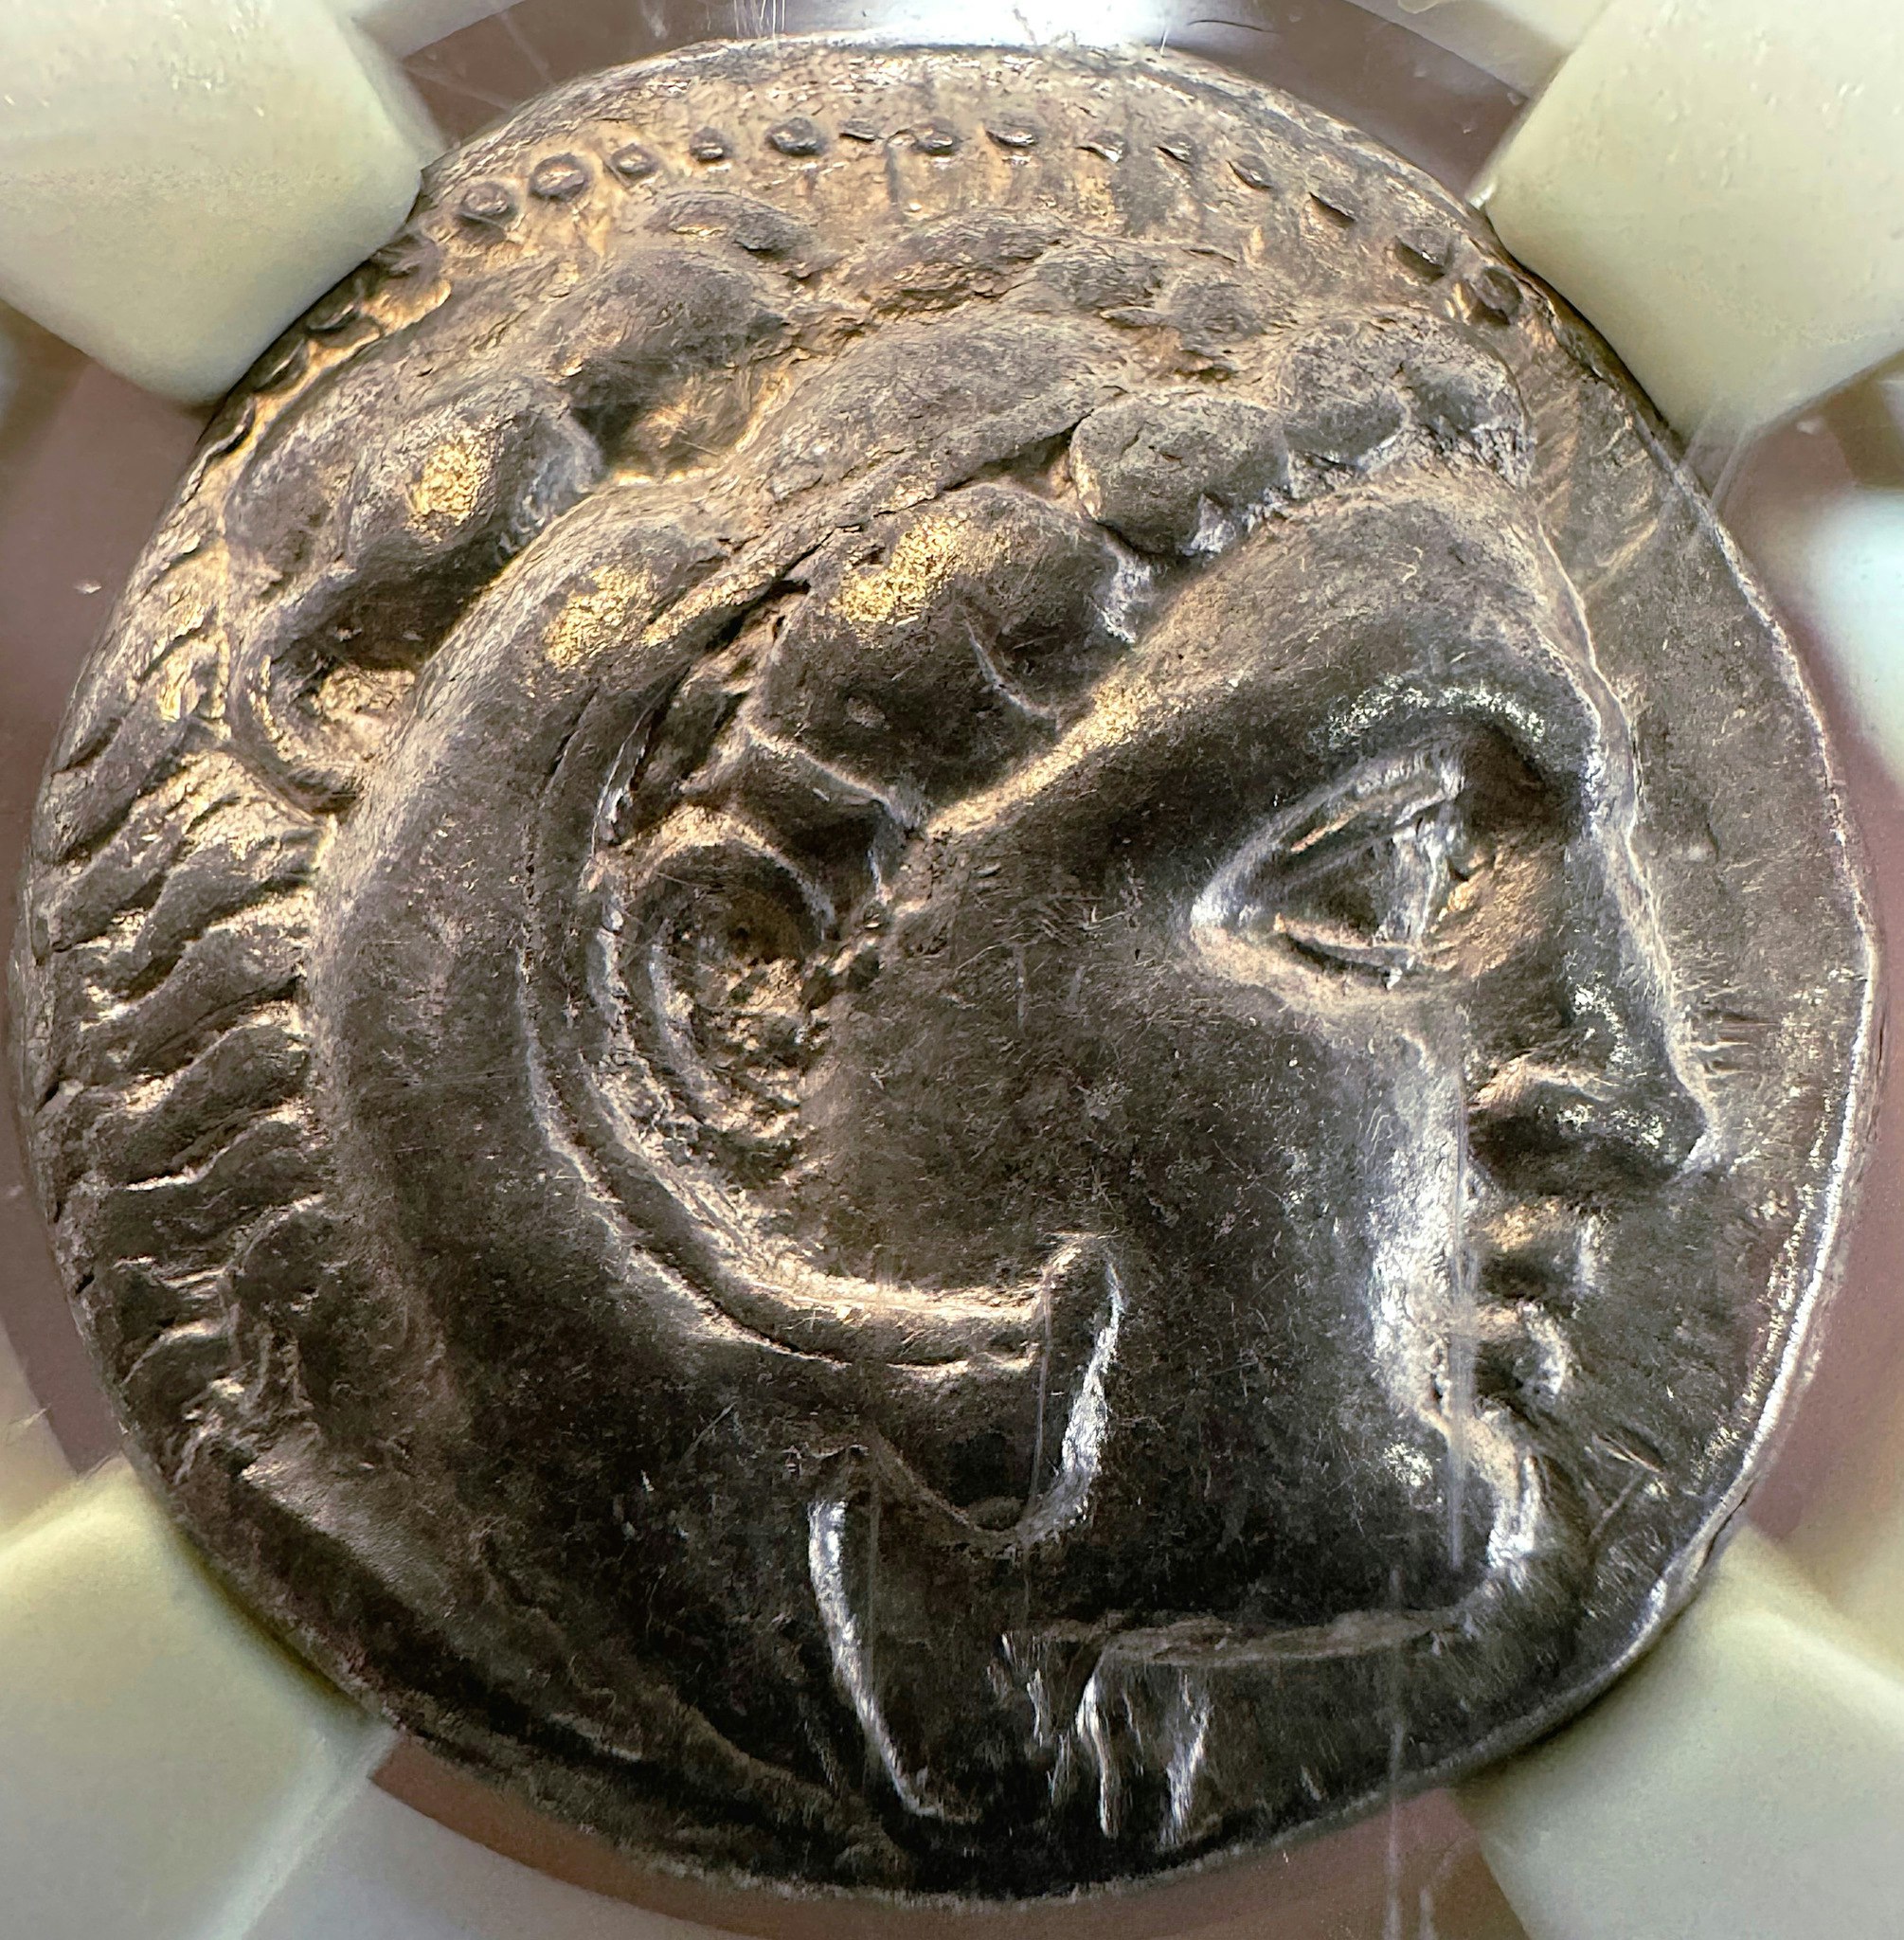 Alexander den store 336-323 f.Kr - Vackert exemplar i NGC hållare